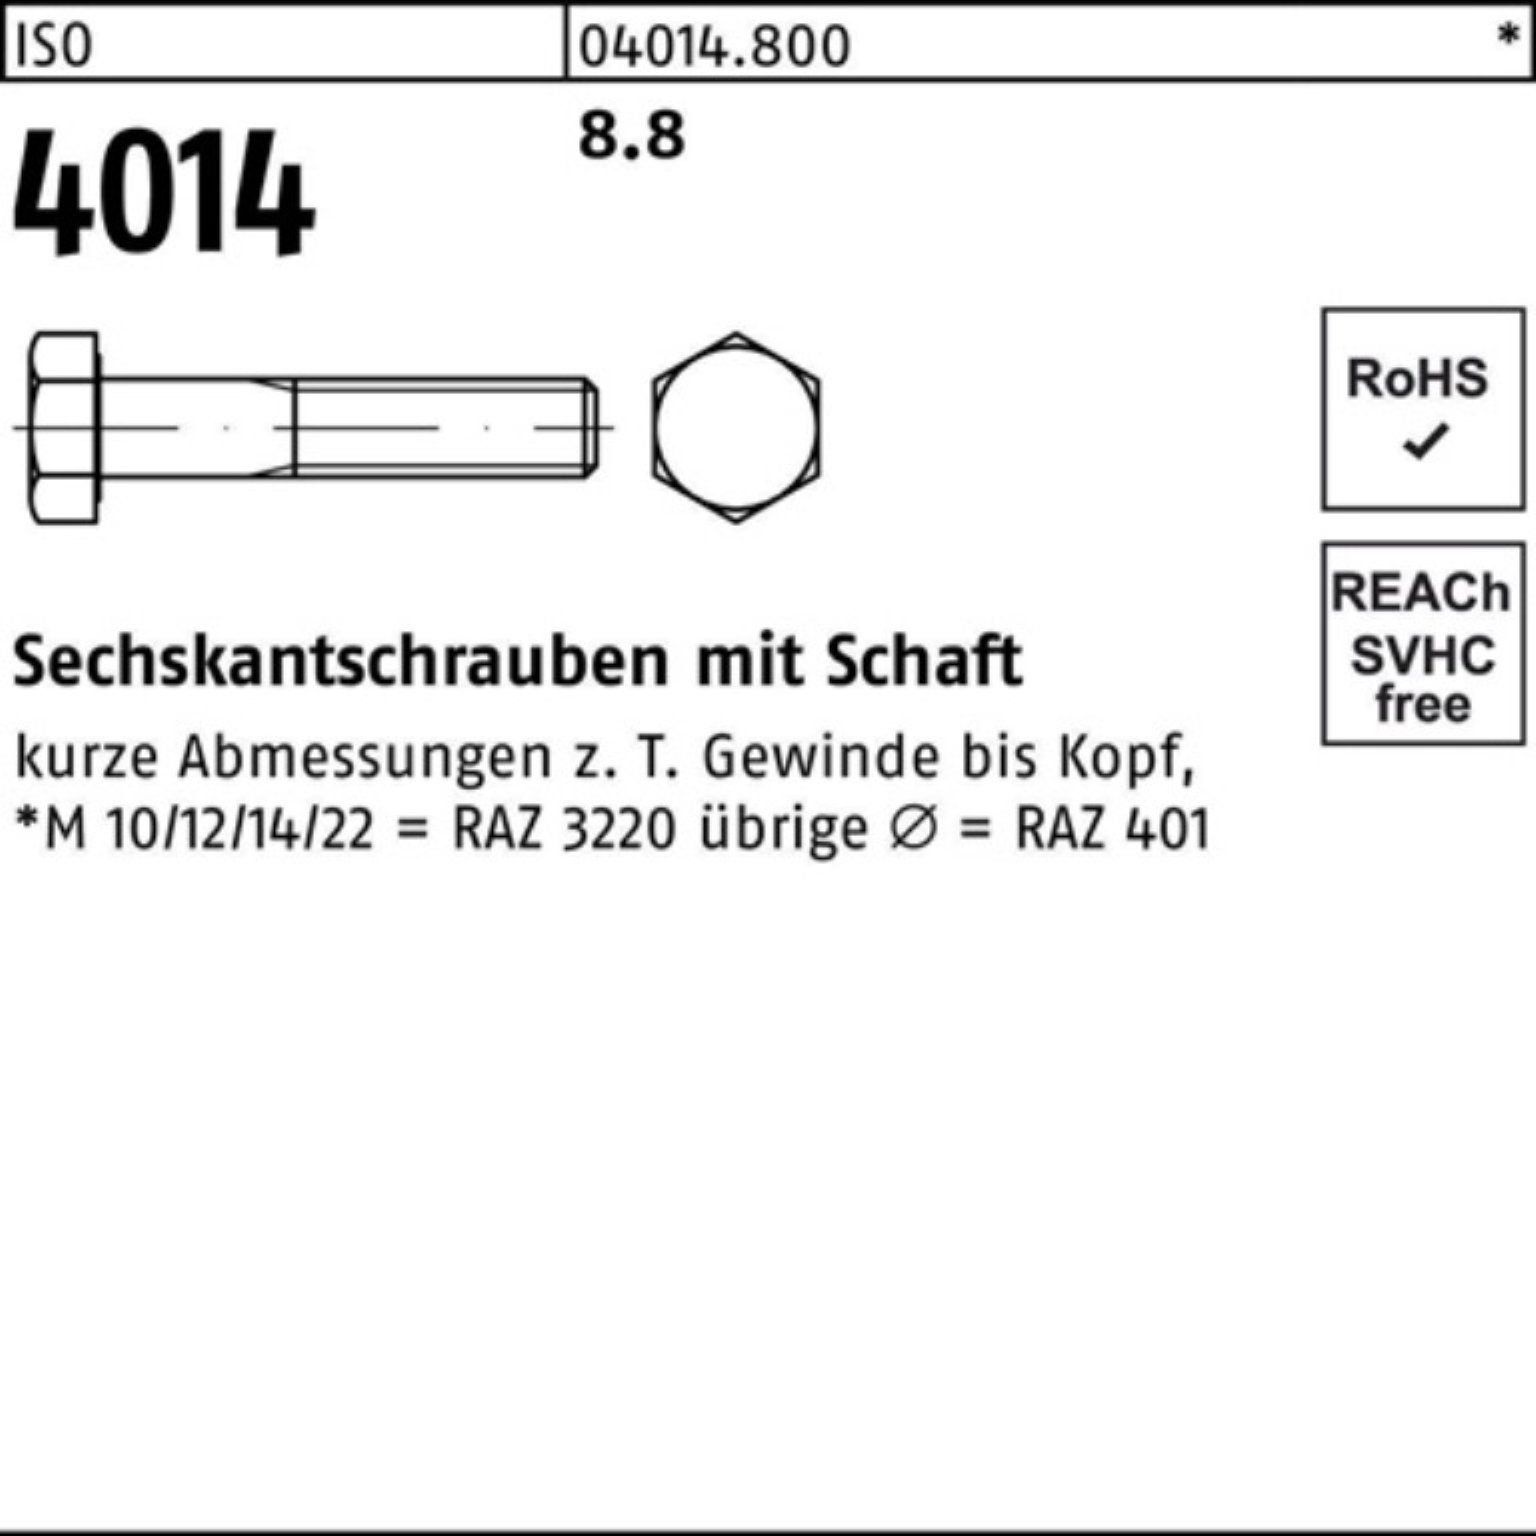 IS Pack Schaft Sechskantschraube Stück 8.8 M10x 50 Sechskantschraube ISO 100er 180 4014 Bufab